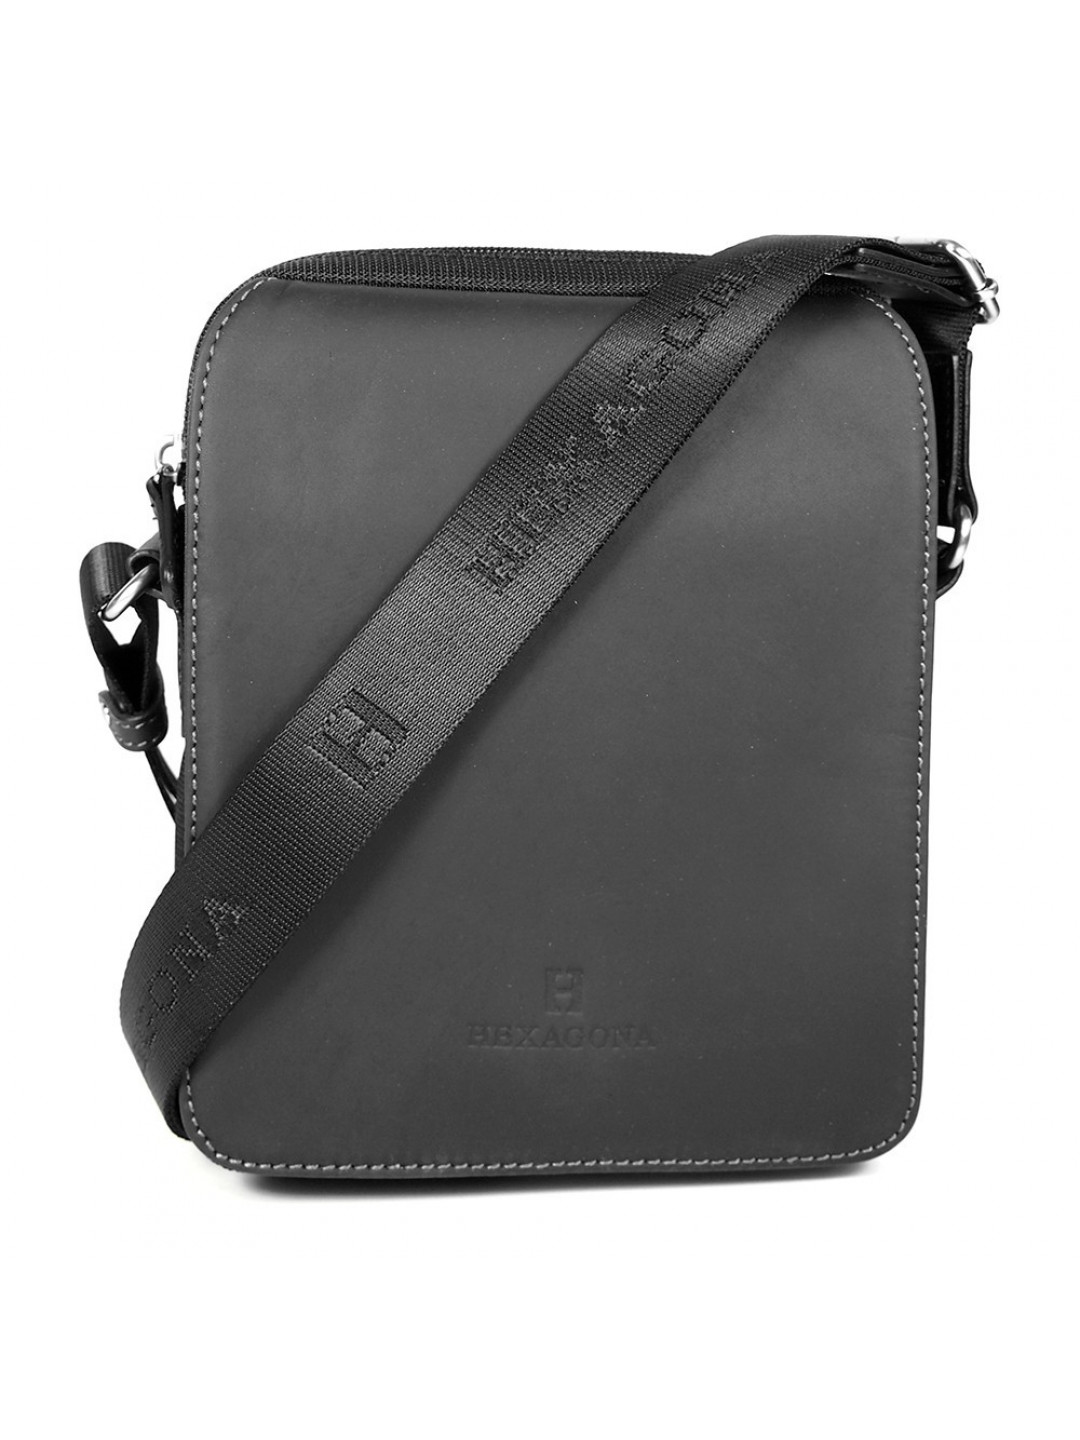 Pánská taška přes rameno Hexagona 299162 – černá